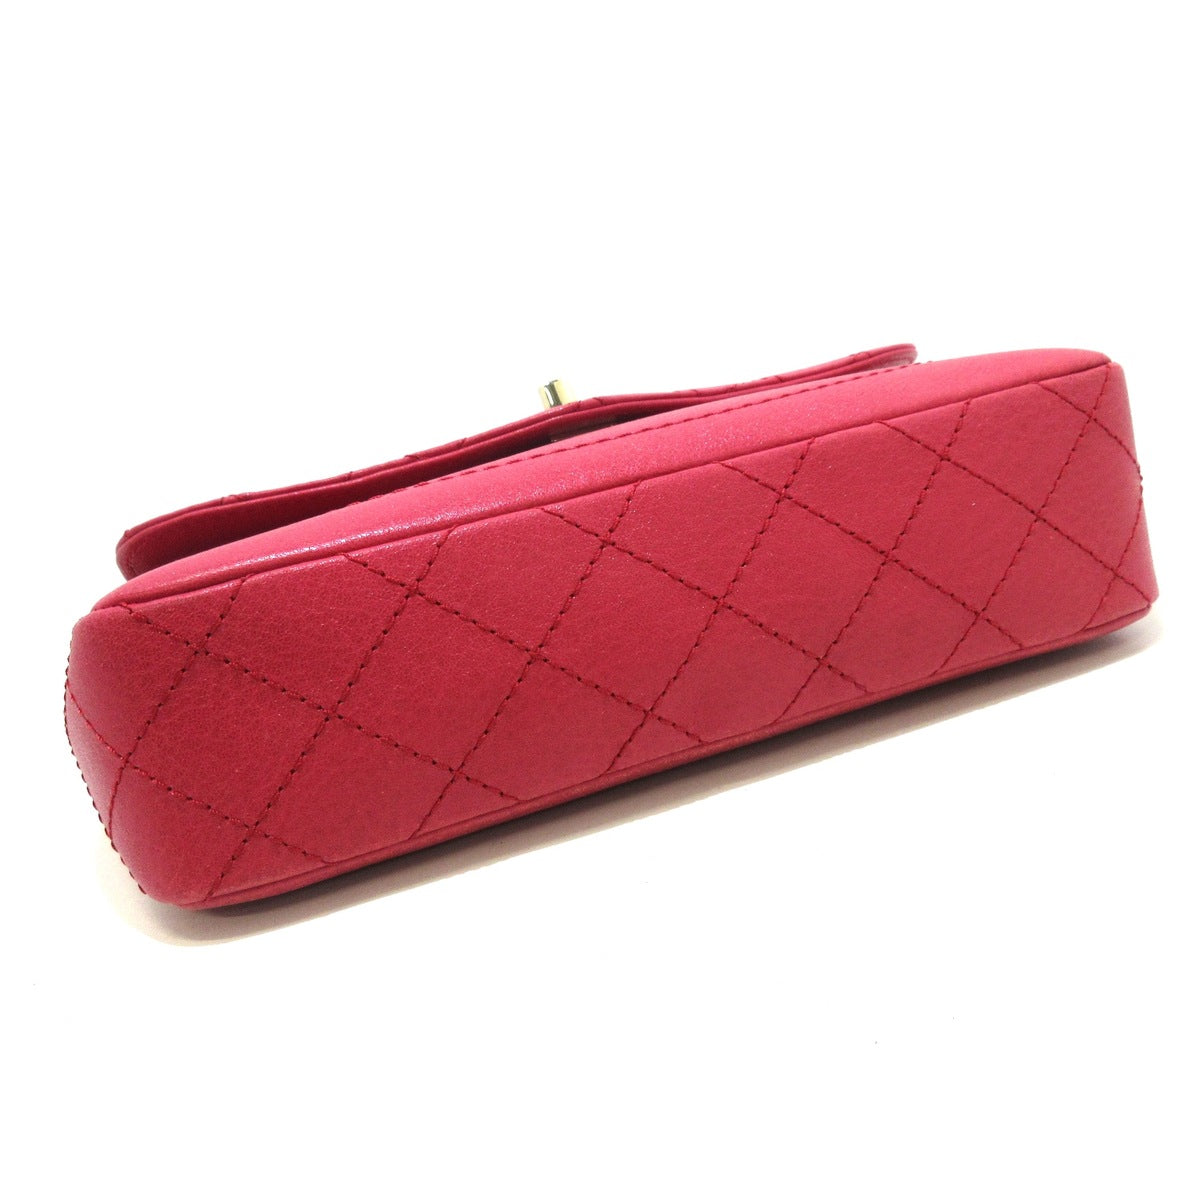 CHANEL - Single Flap Matelasse Shoulder Bag Pink Leather